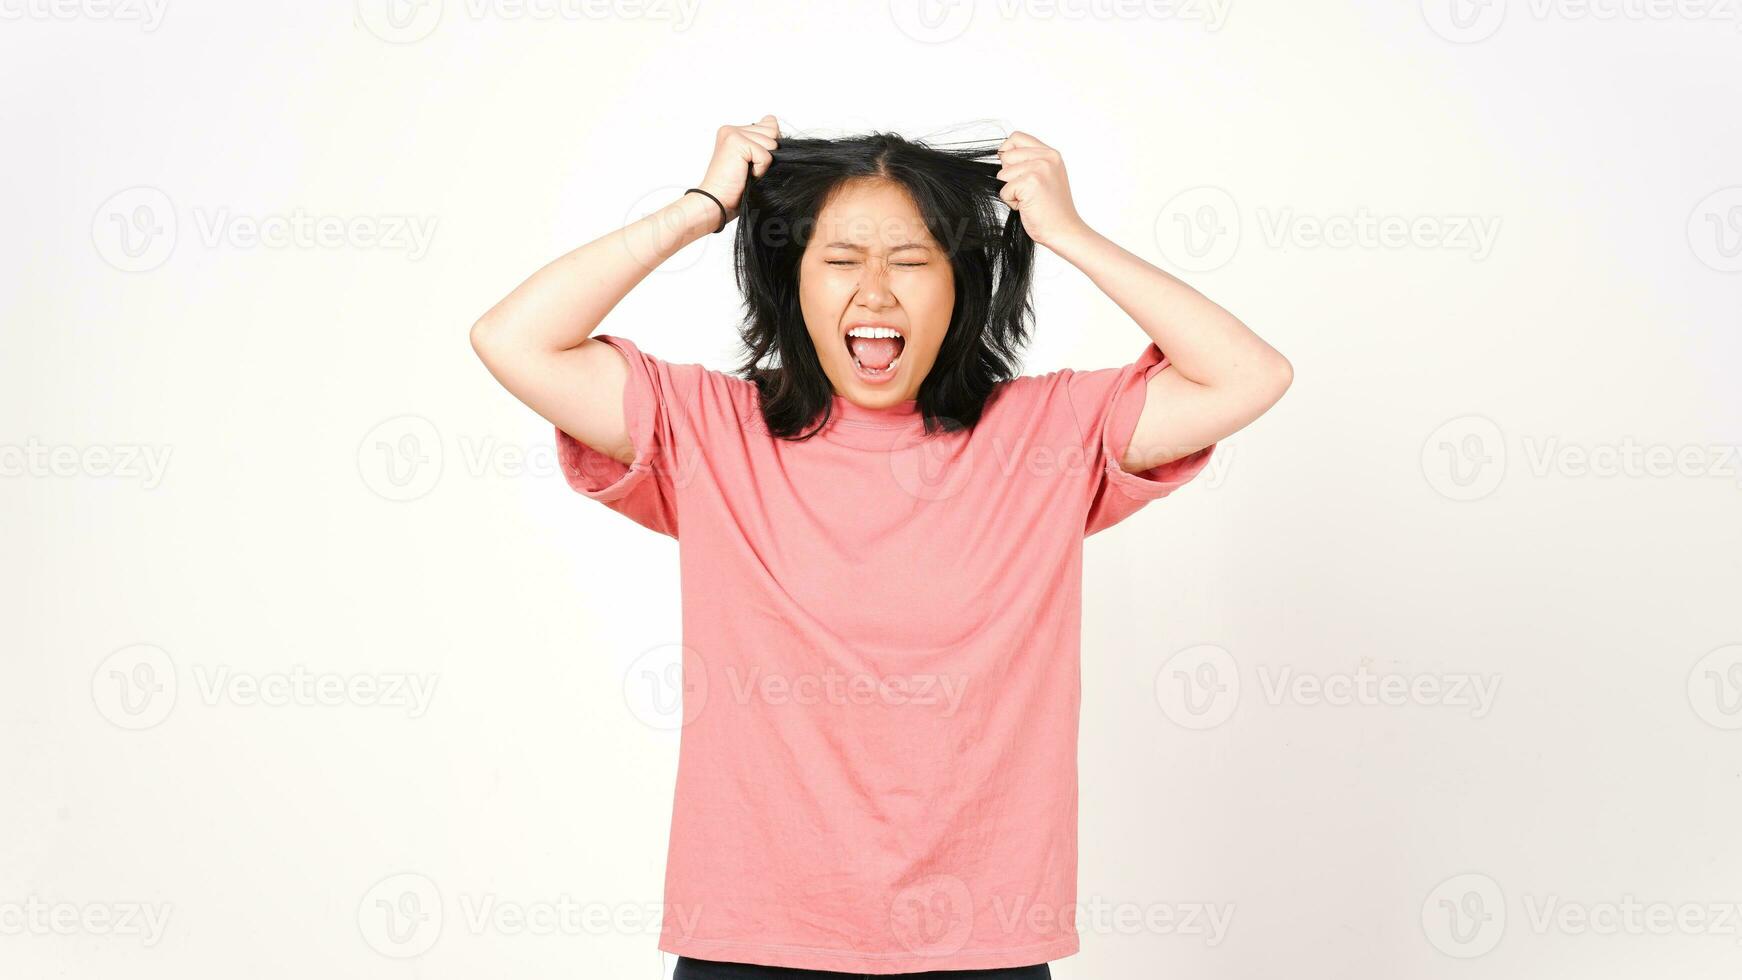 enojado, estresado, y, tirar, pelo, de, hermoso, mujer asiática, aislado, blanco, plano de fondo foto